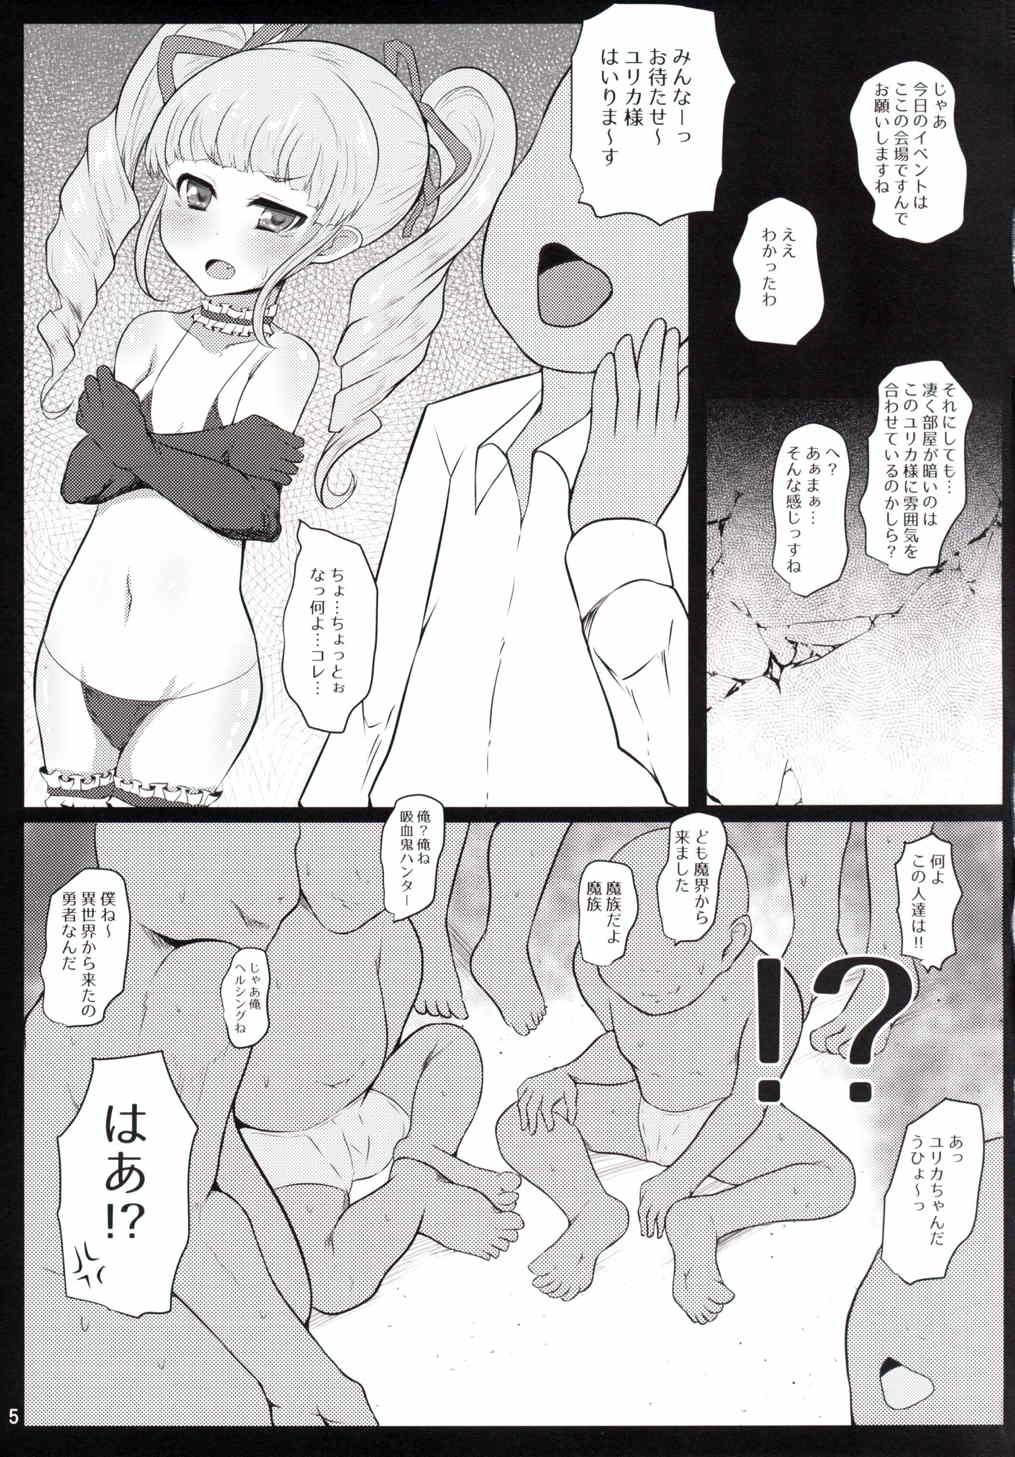 Fodendo Very Good Morning Yurikatsu - Aikatsu Hot Girls Fucking - Page 4